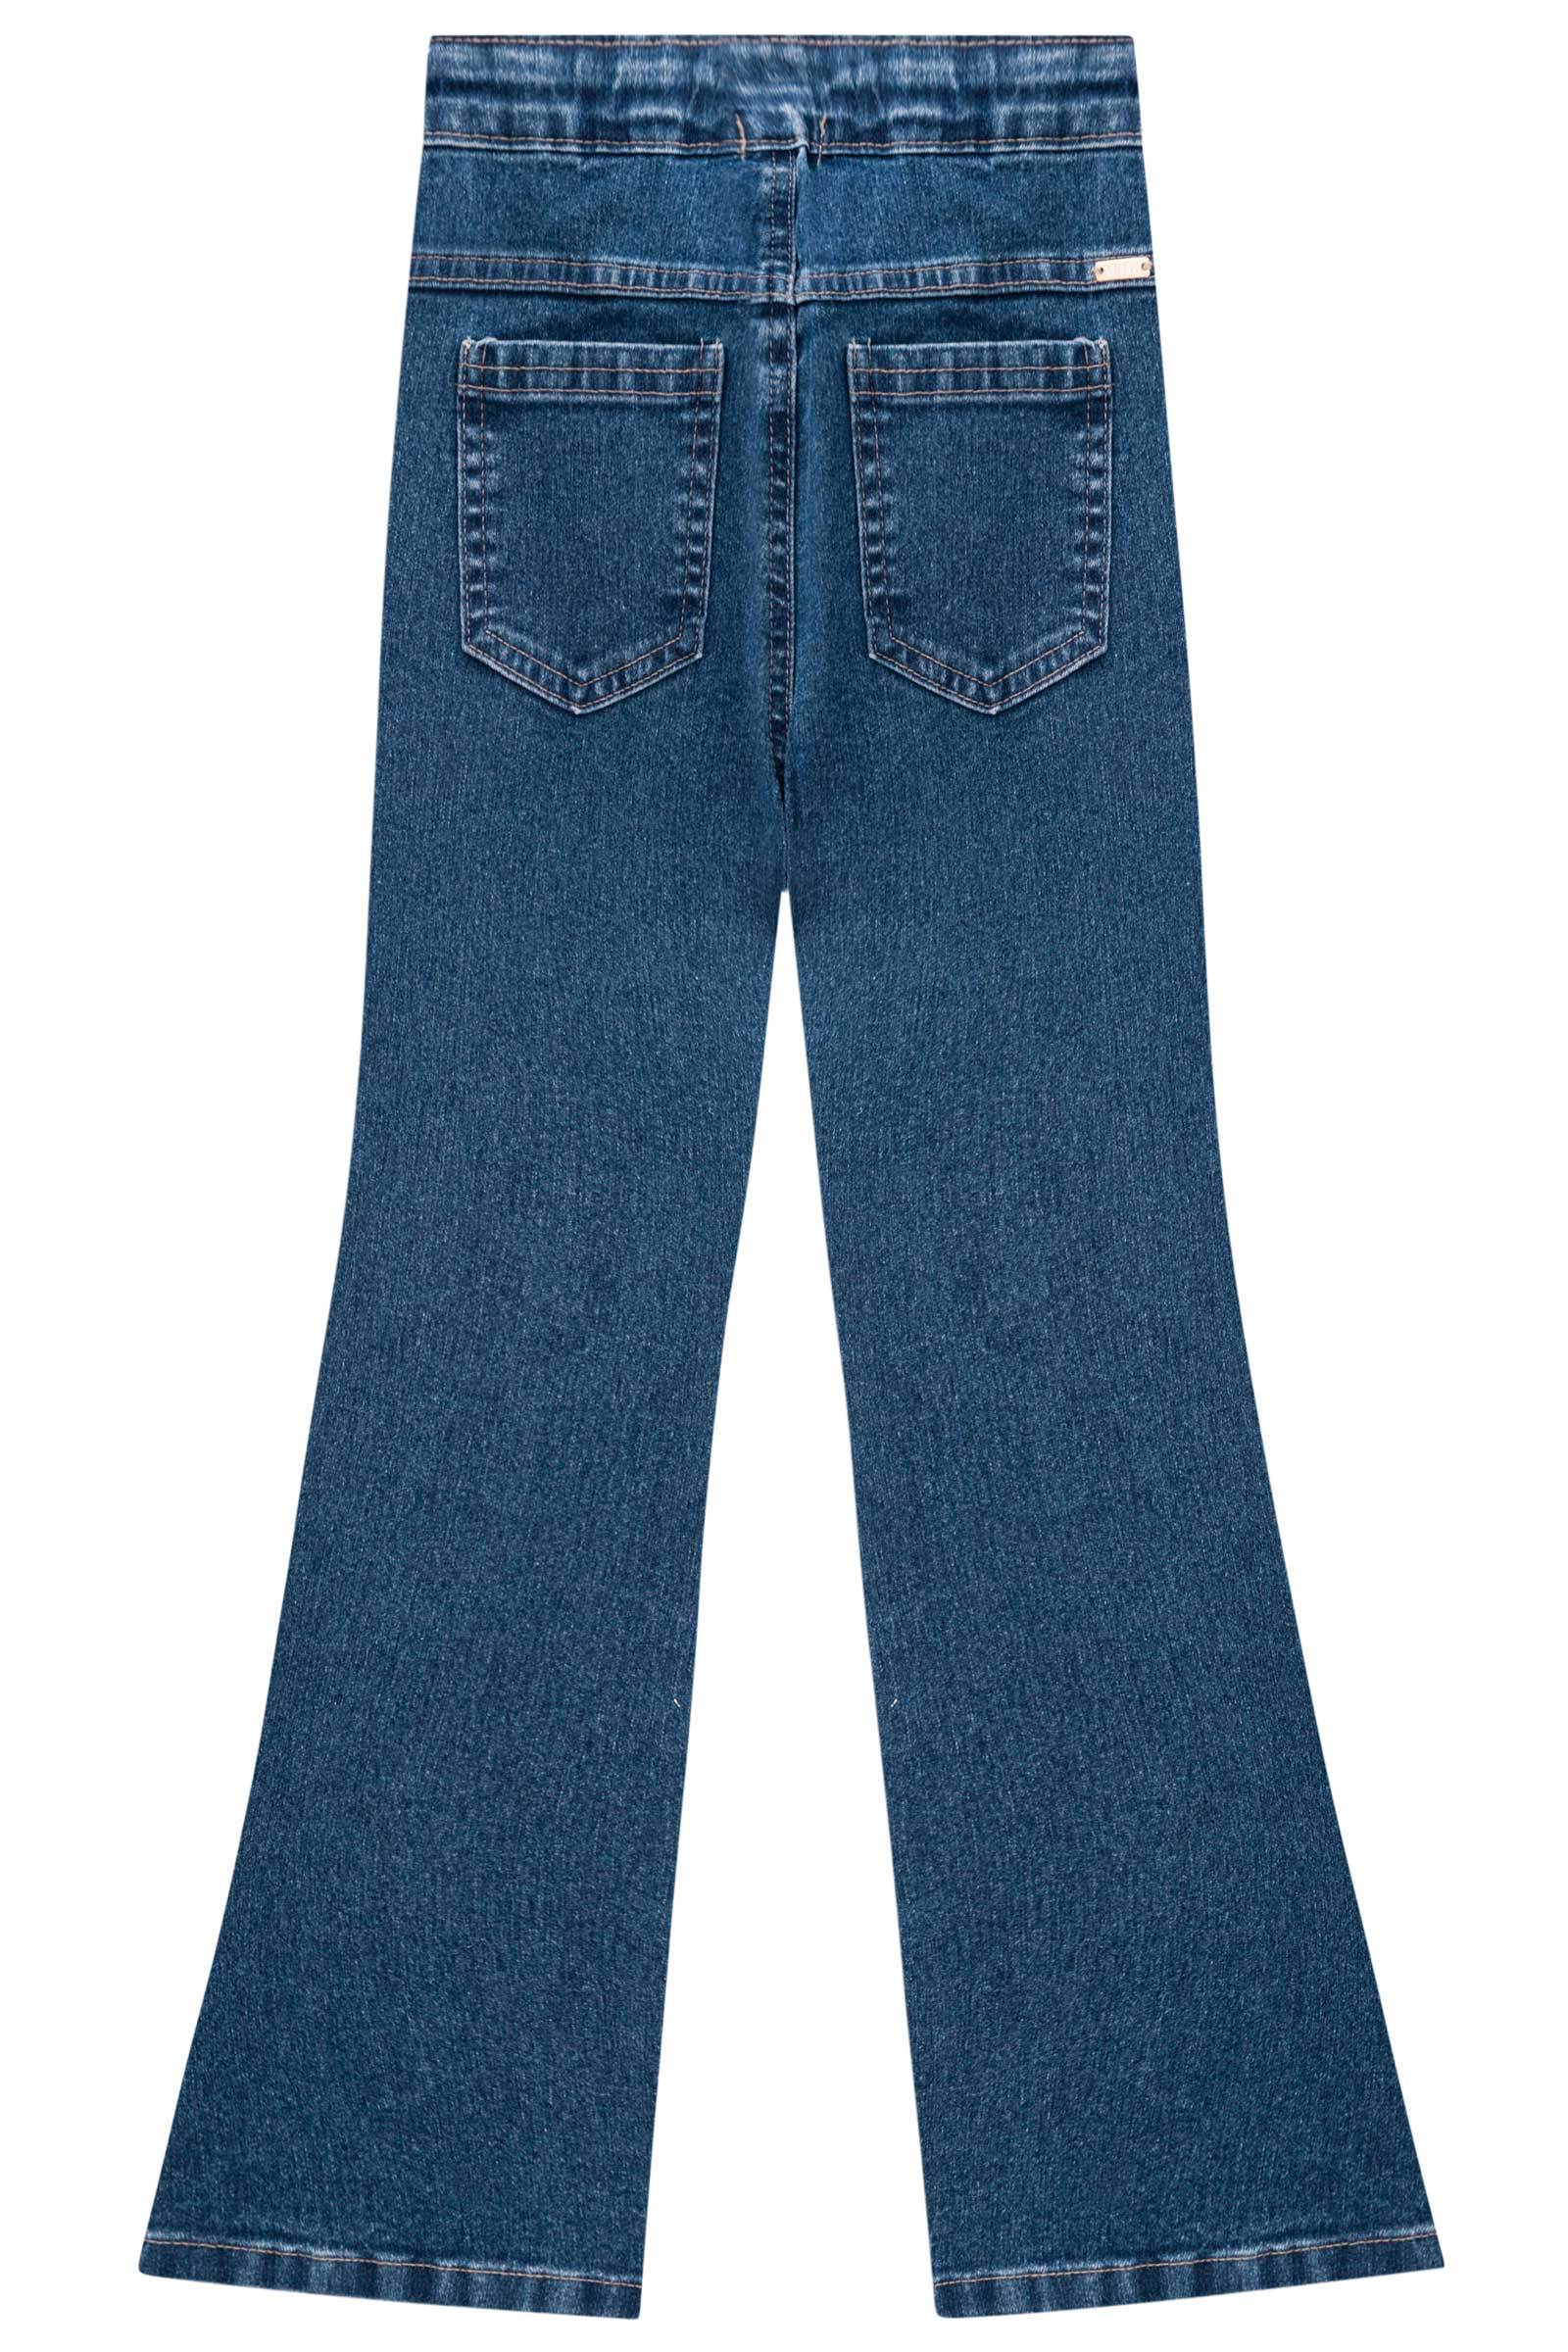 Calça Flare em Jeans Belline com Elastano 71773 Infanti